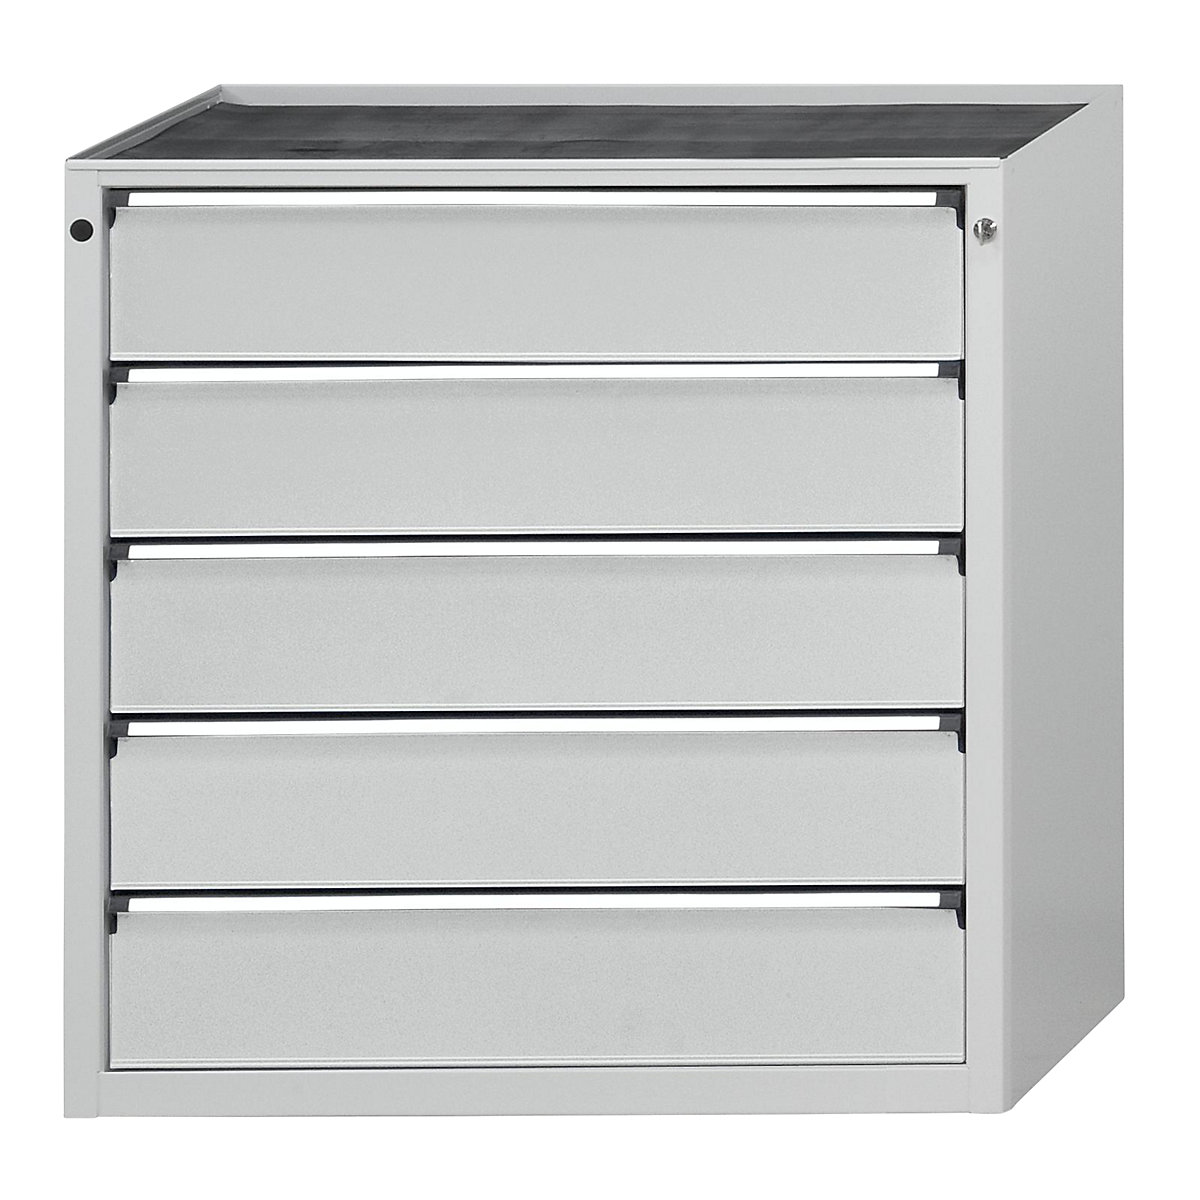 Zásuvková skříň – ANKE, š x h 910 x 675 mm, nosnost zásuvky 200 kg, 5 zásuvek, výška 980 mm, čelo světle šedé